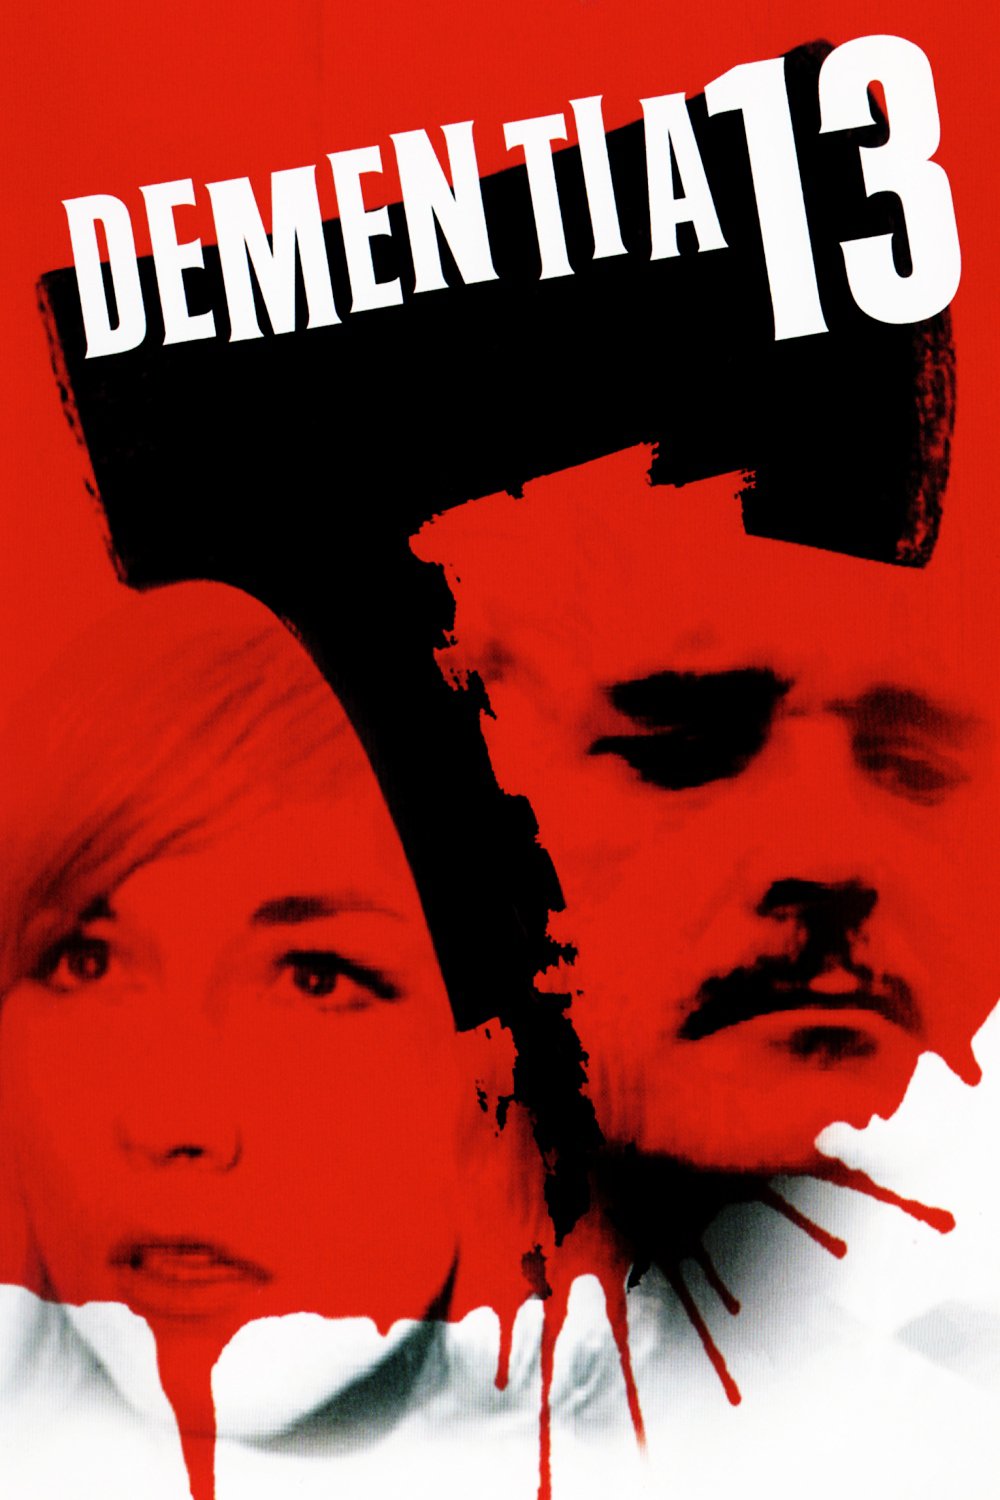 Dementia 13 (DVD)